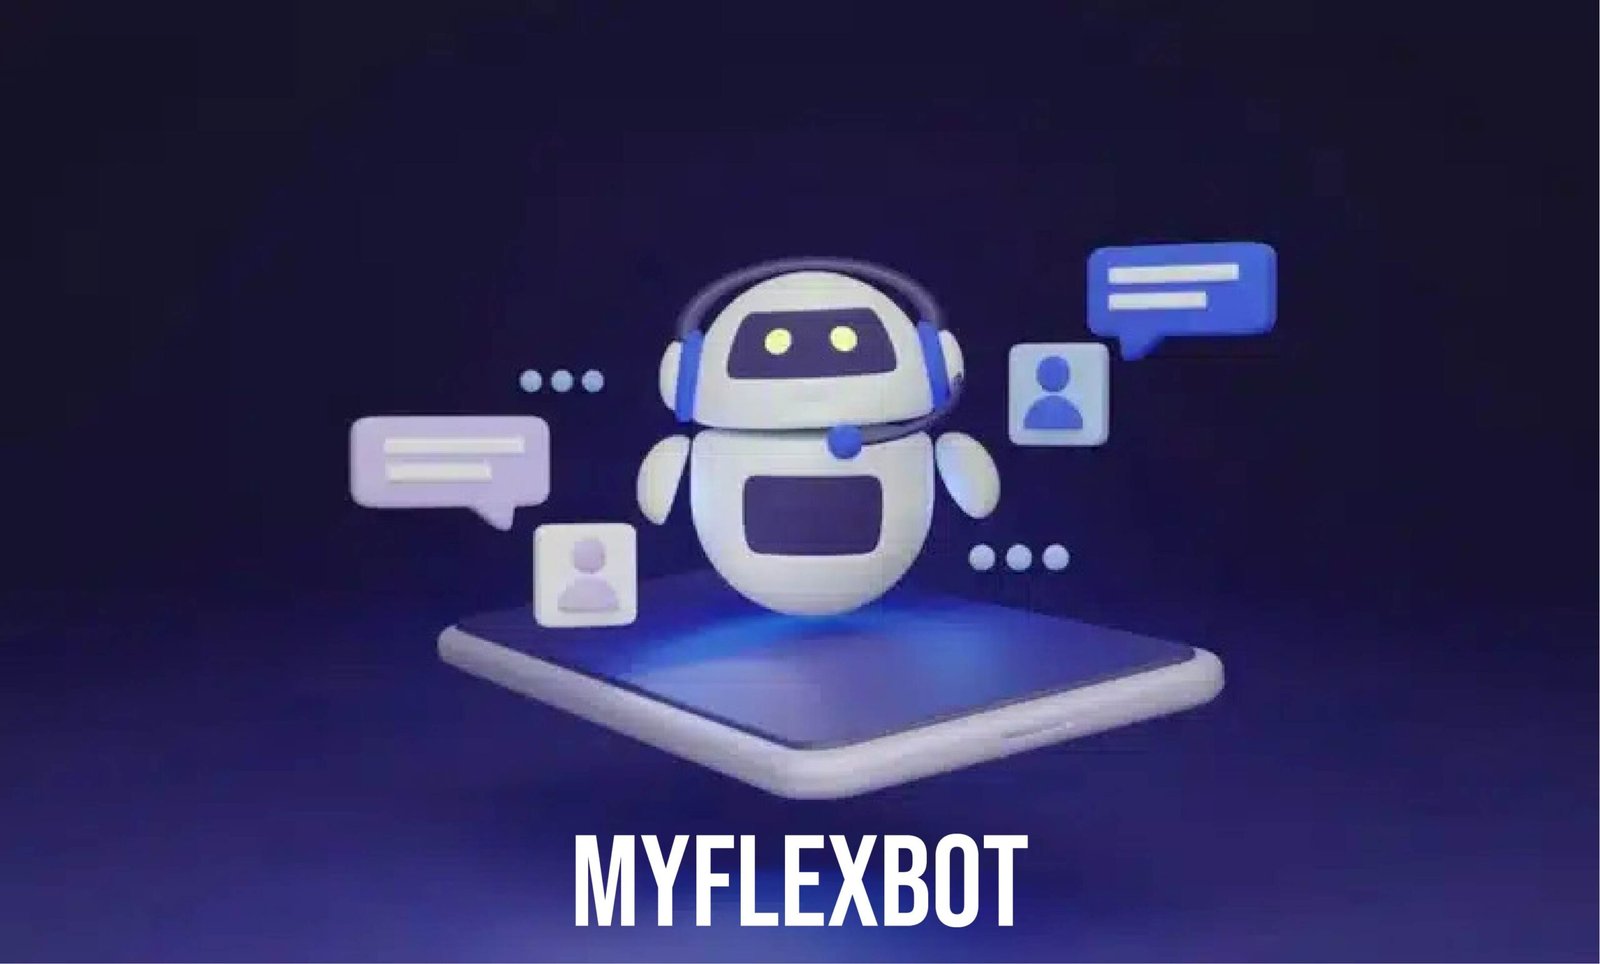 MYFLEXBOT